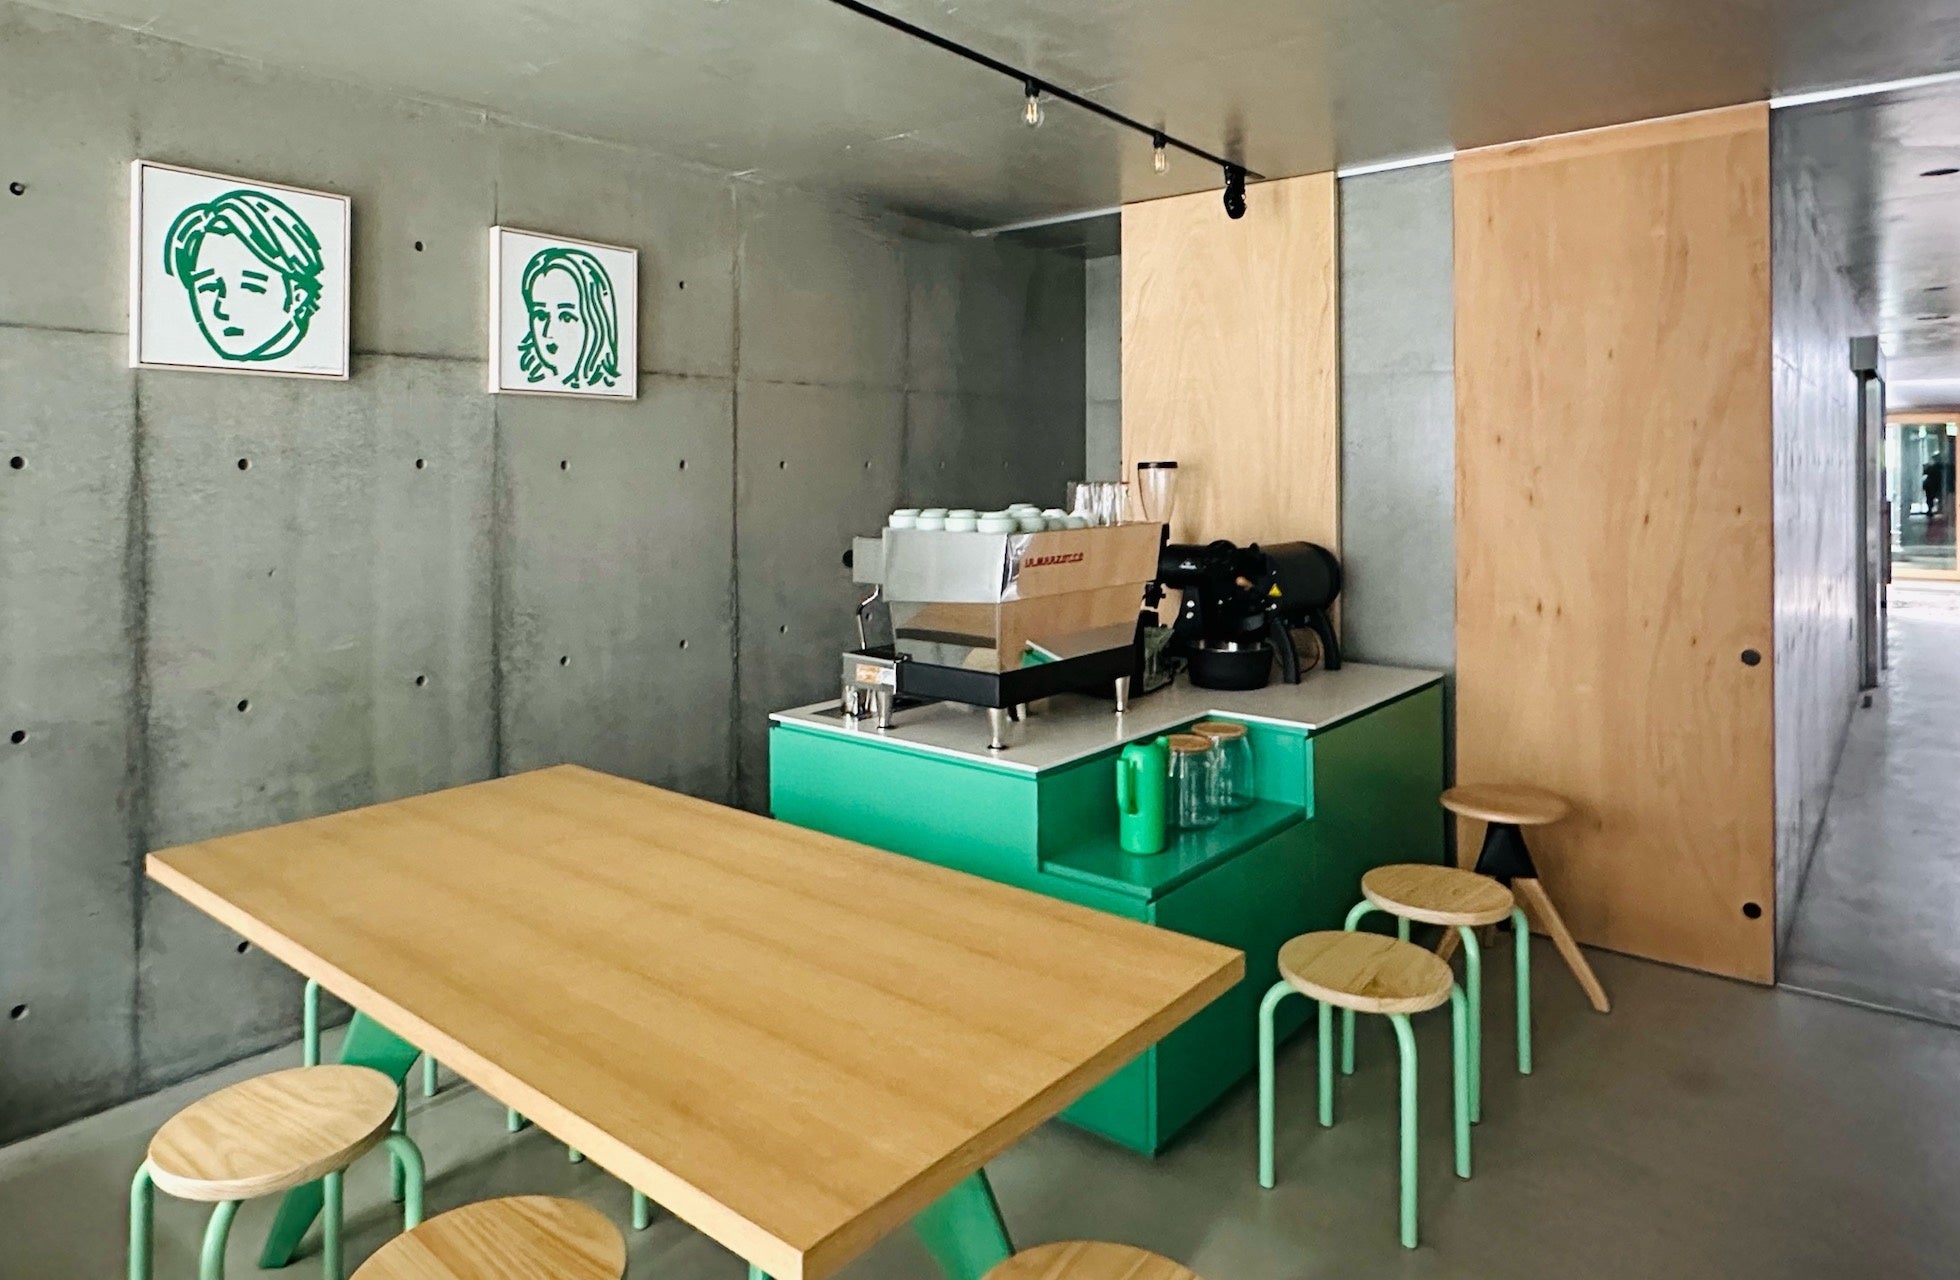 建築設計事務所KINOの新業態、京町家の軒下でクリエイターとコラボレーションするカフェ「noki noki」が7月7...